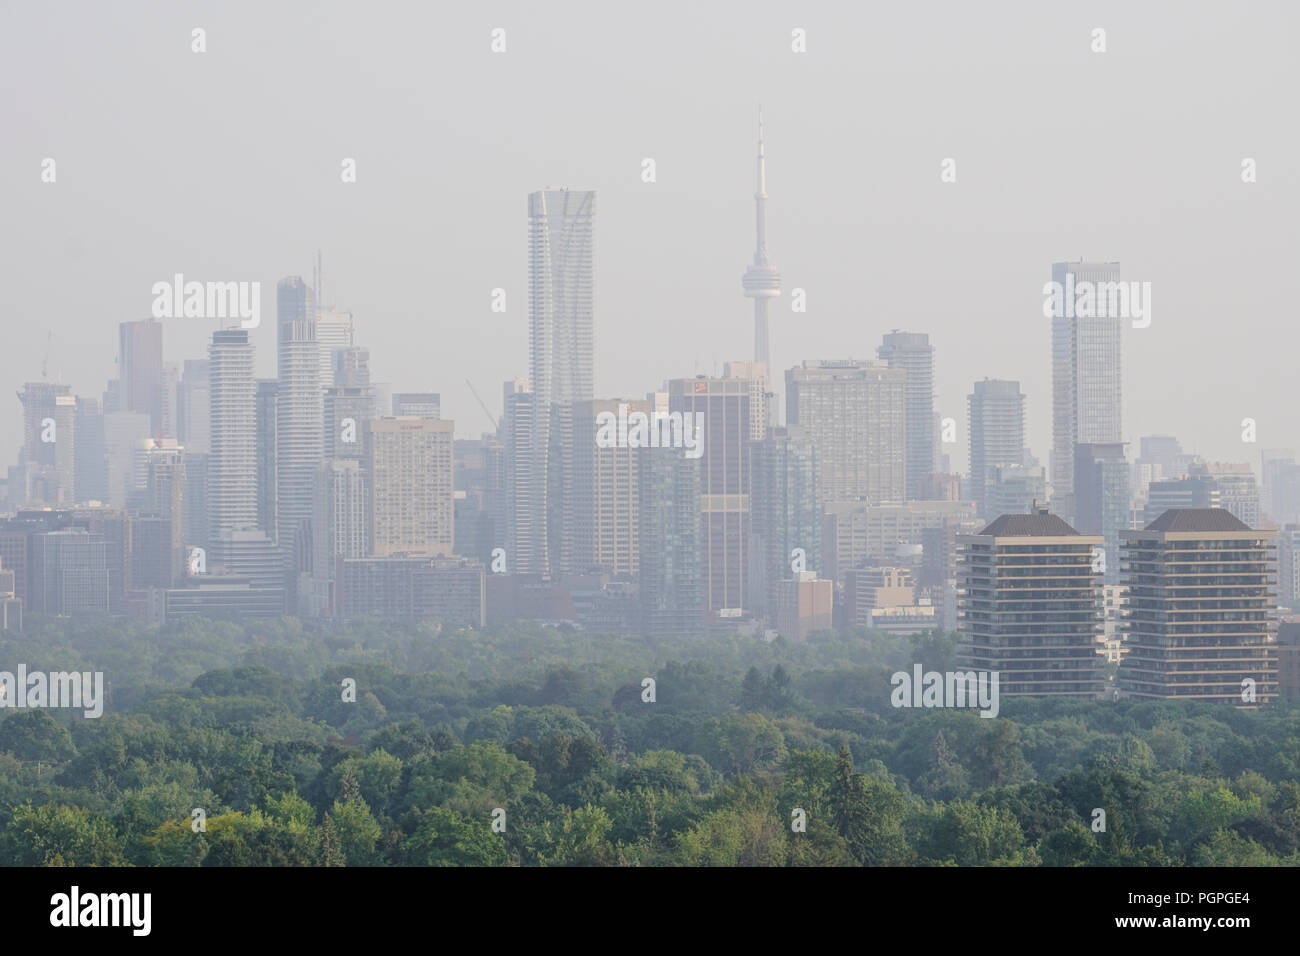 Toronto, Canada. 27 août 2018. La fin de l'été à Toronto Skyline avec de l'air chaud et humide ainsi que le smog haze causé par un feu de forêt dans le Nord de l'Ontario Crédit : CharlineXia/Alamy Live News Banque D'Images